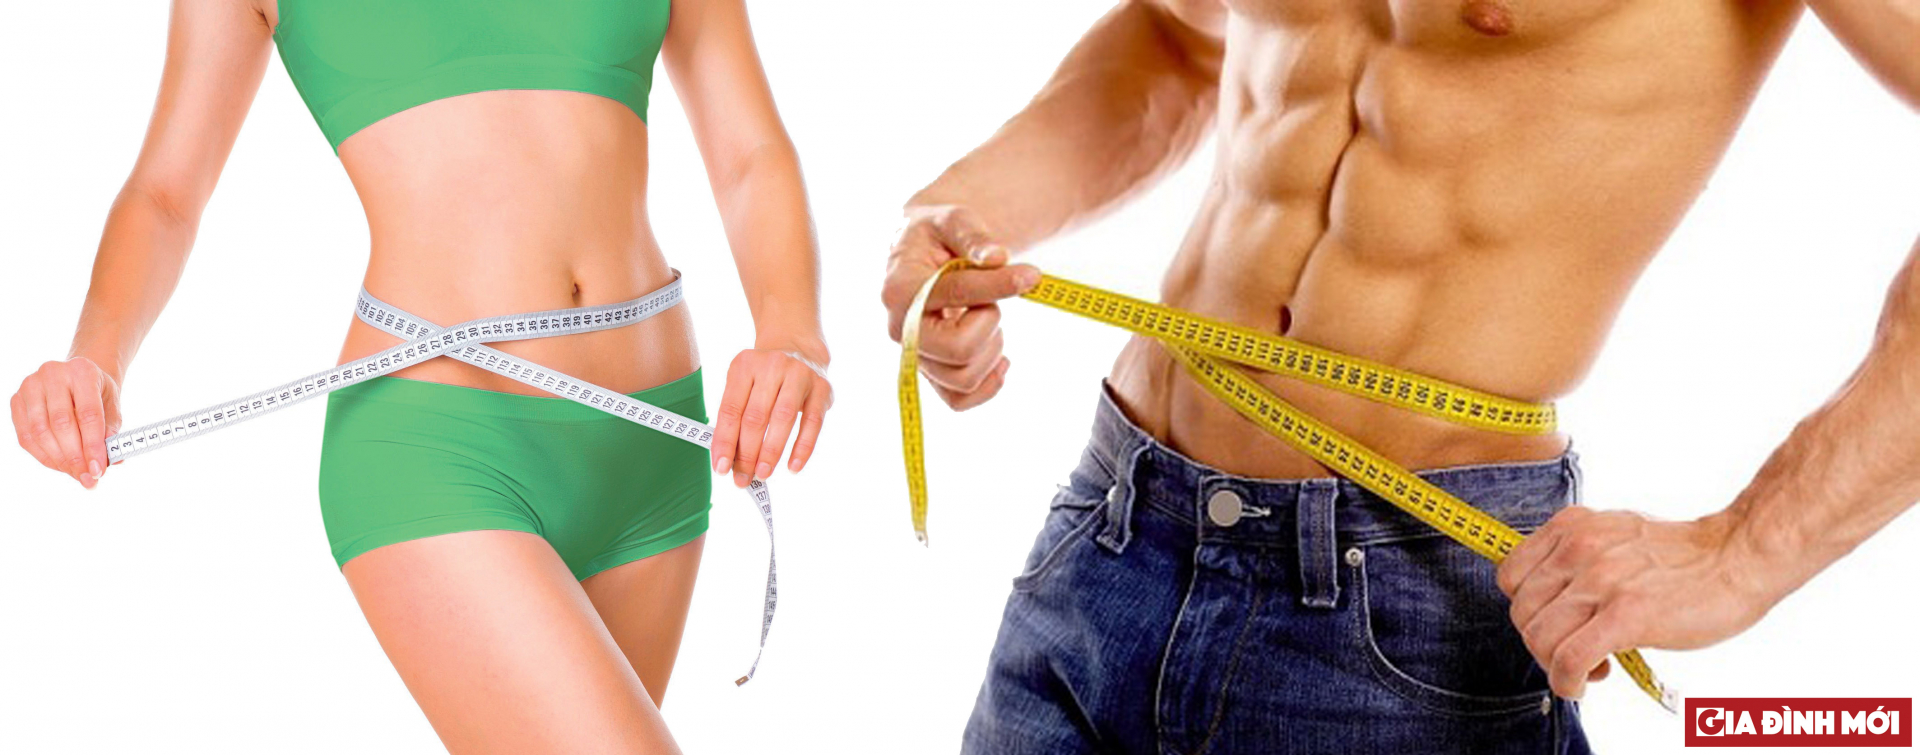 Vợ hoặc chồng giảm cân sẽ ảnh hưởng đến cân nặng của nửa kia